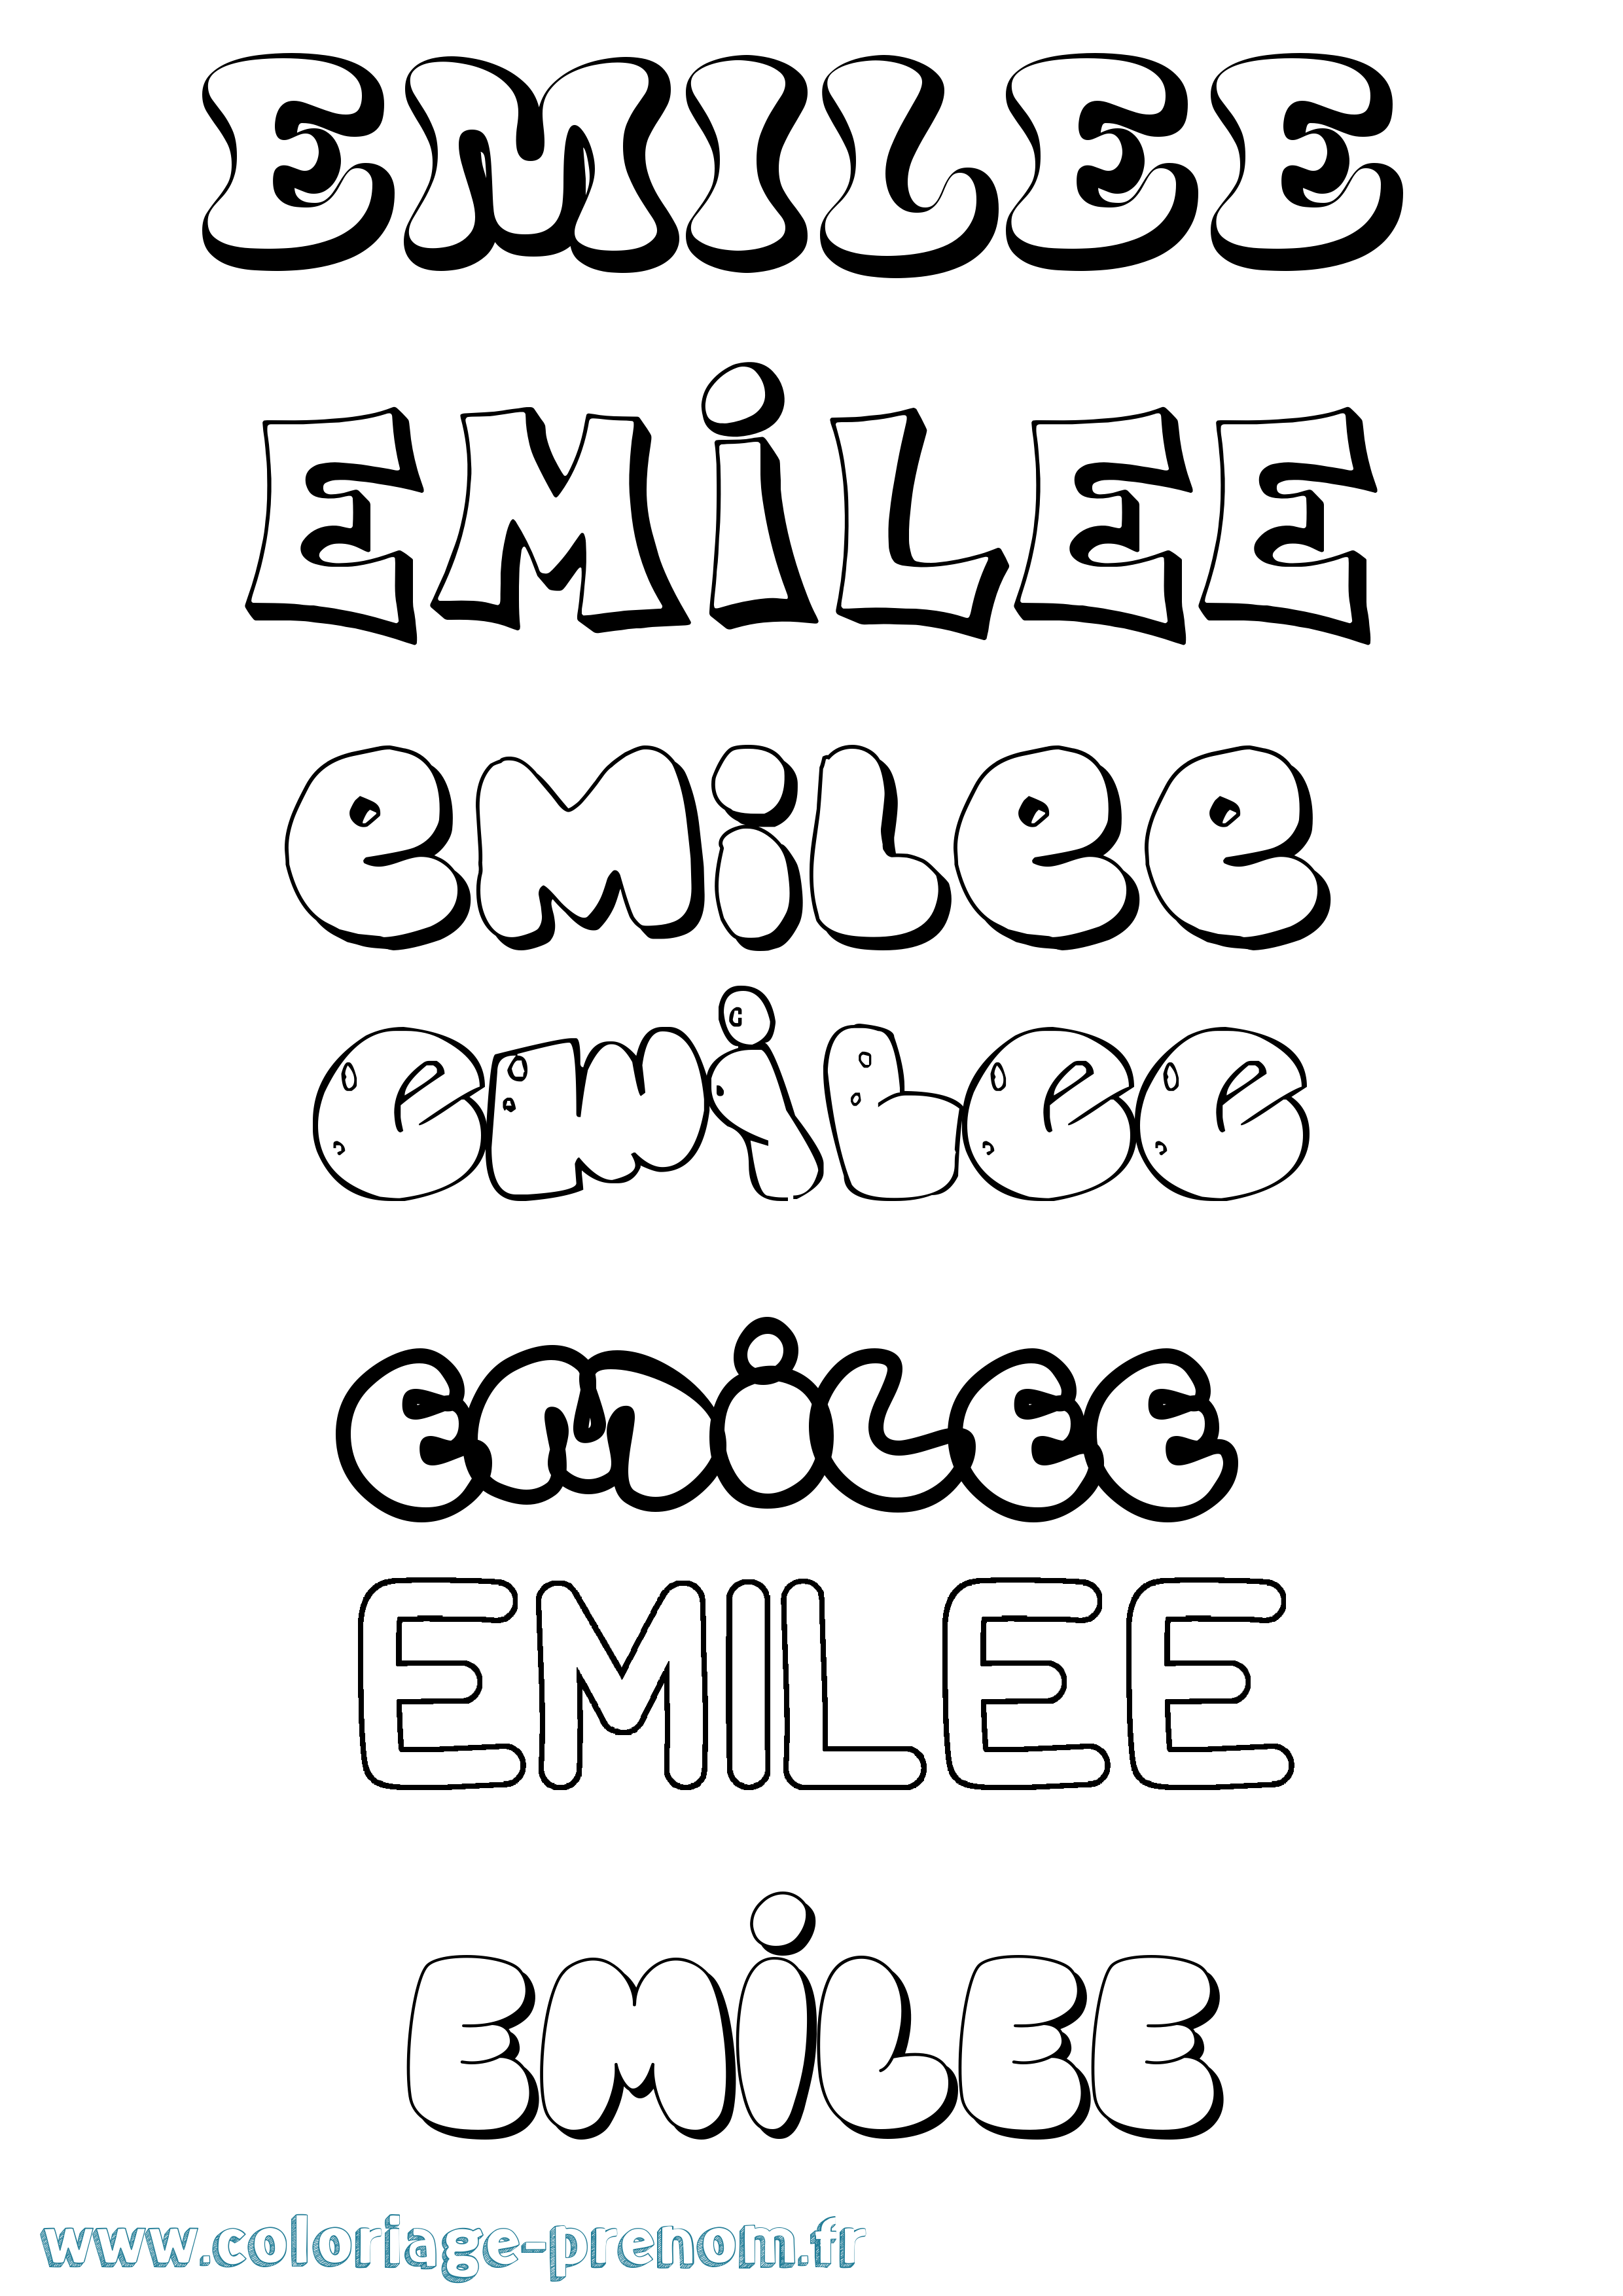 Coloriage prénom Emilee Bubble